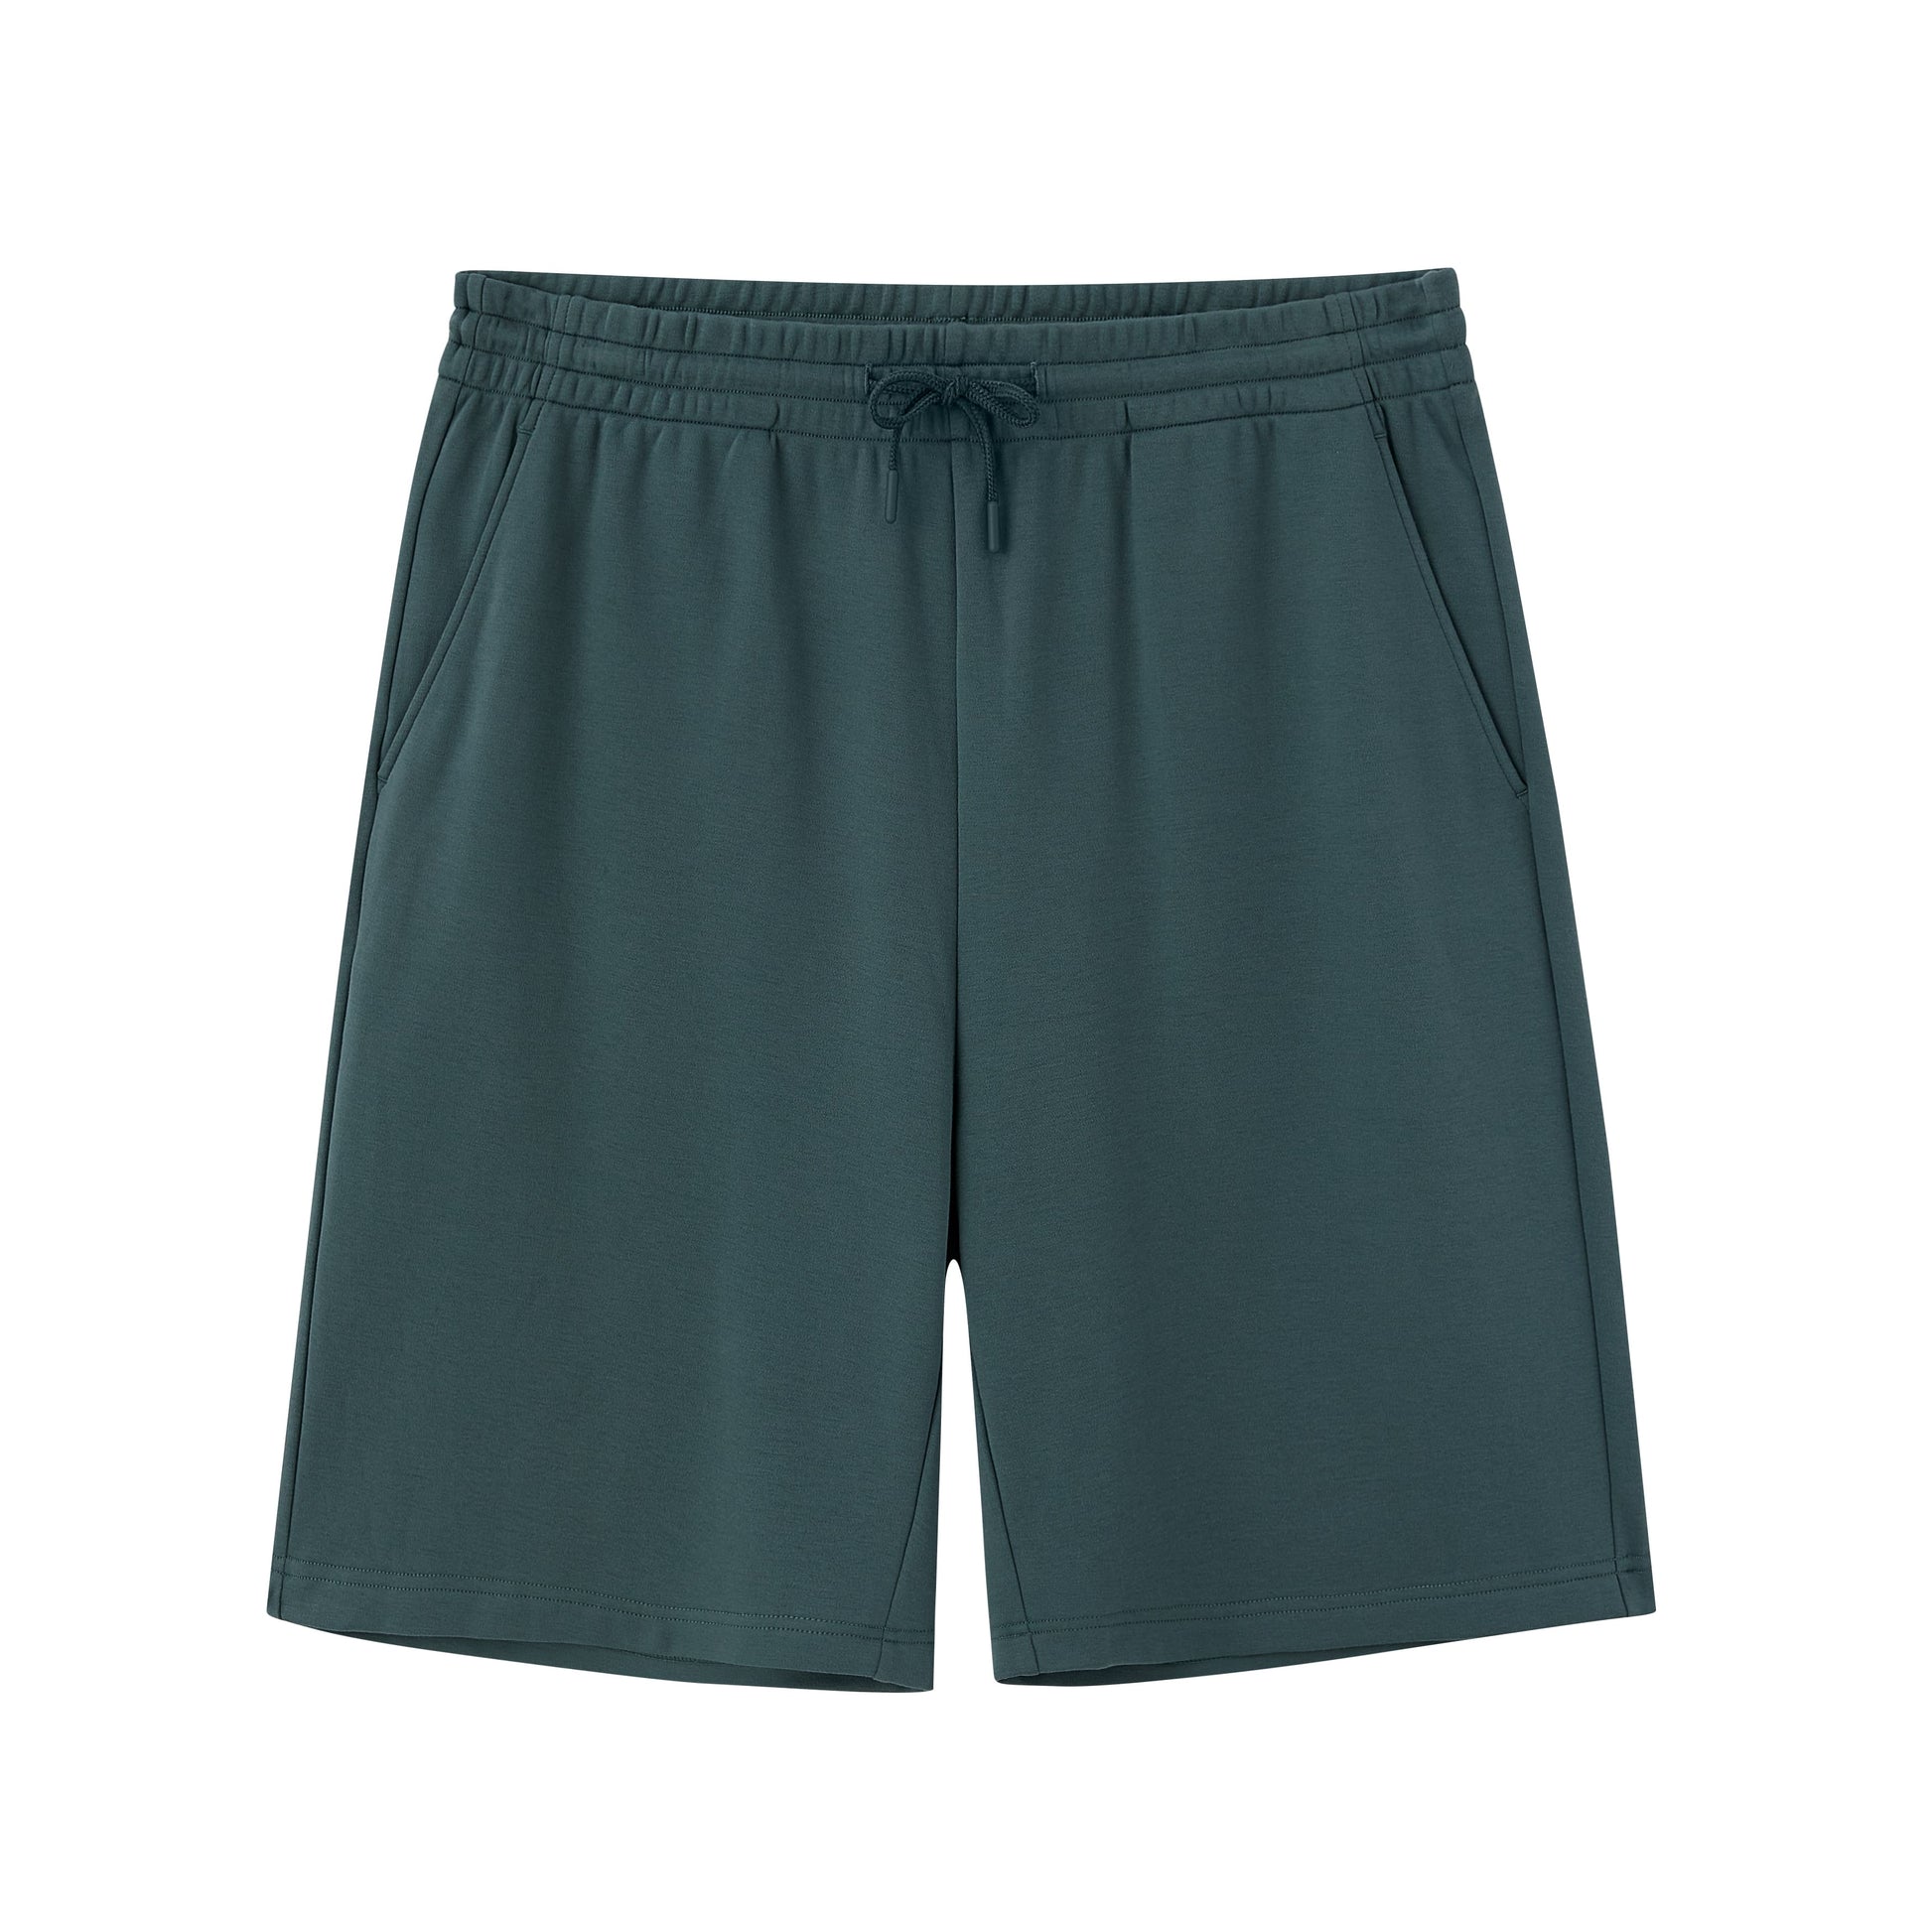 flat lay image of green shorts